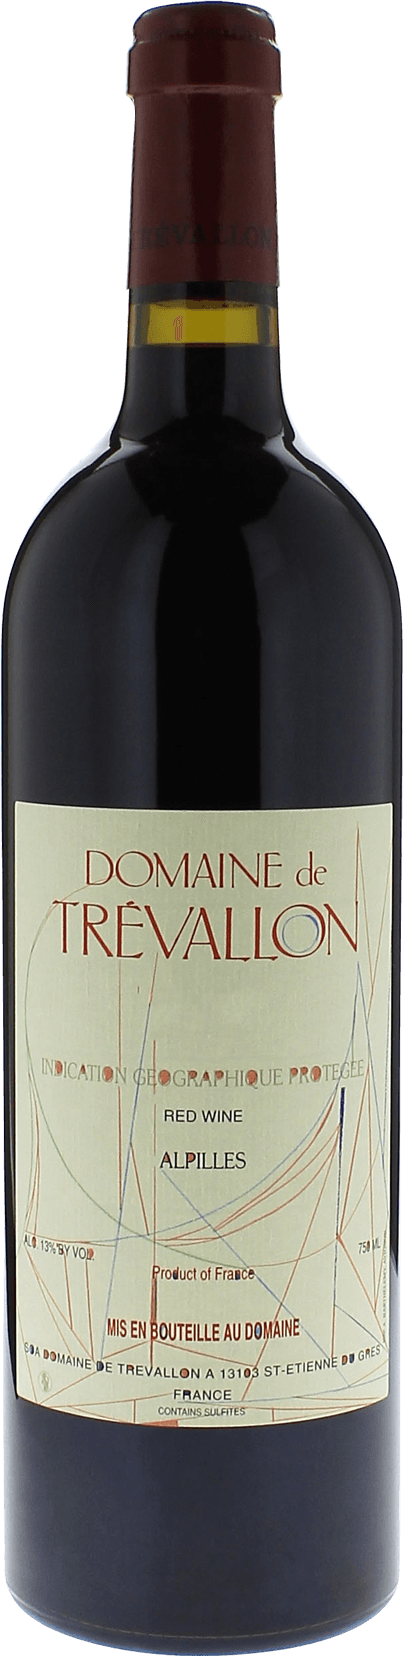 Domaine de trevallon rouge 2016  IGP Alpilles, Provence